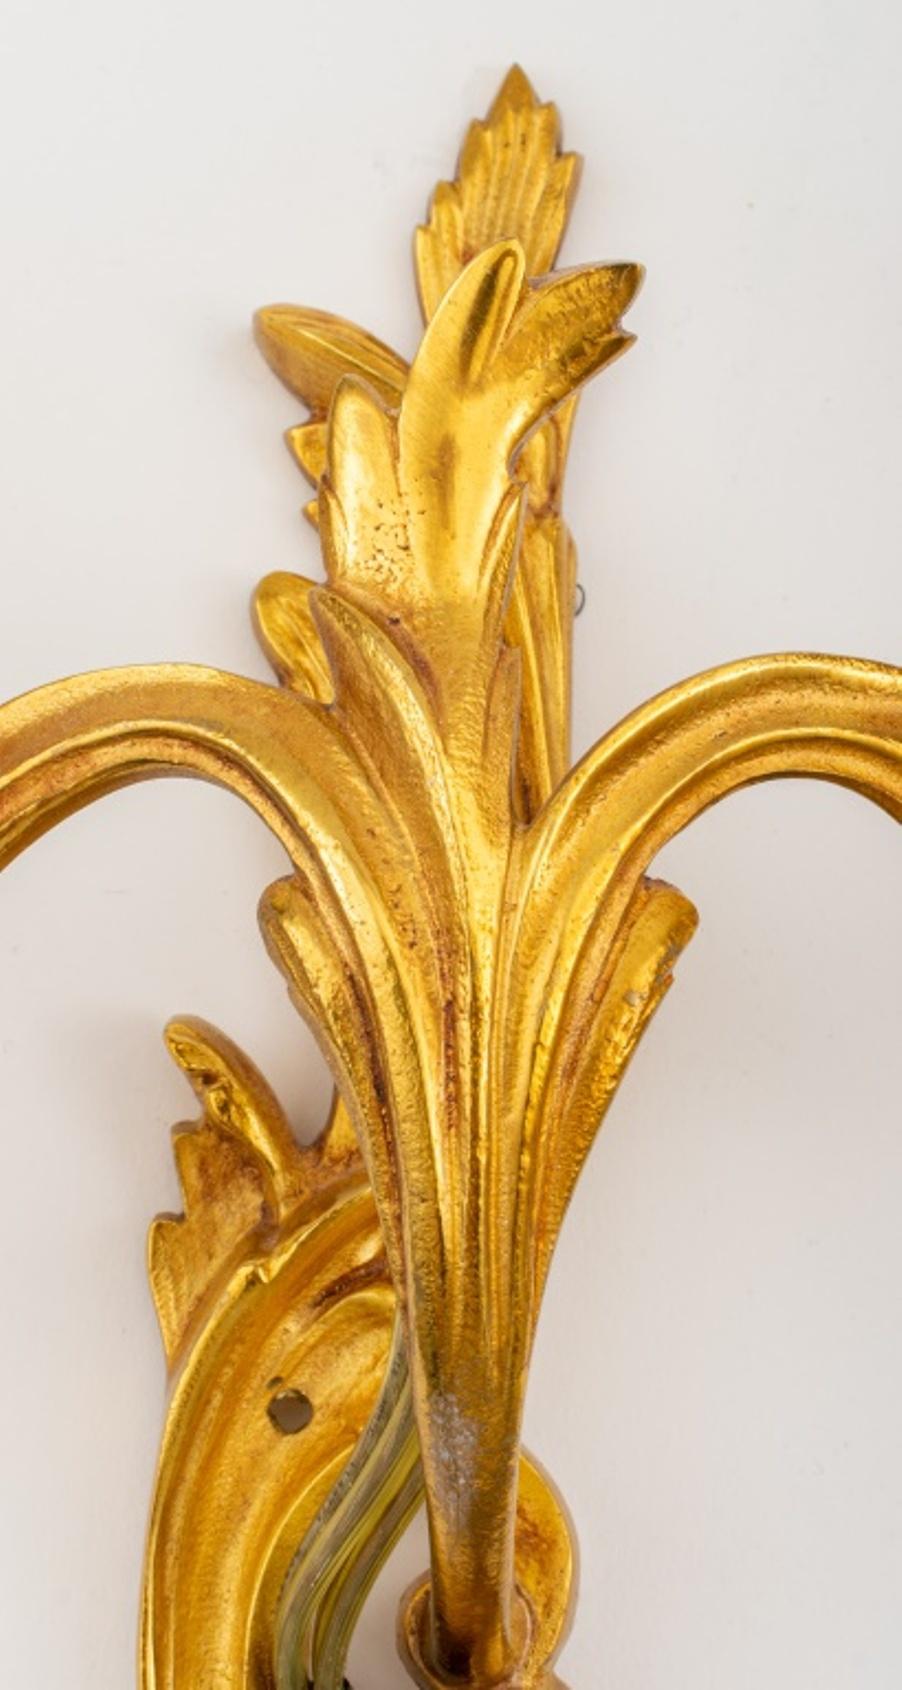 Zweiflammige Ormolu-Leuchten im Stil der Belle Epoque Louis XV, wahrscheinlich um 1900, jeweils in Rocaille-Form mit zwei asymmetrischen Armen, die von einer geschwungenen Rückenplatte in der Art von Caffieri ausgehen. 

Händler: S138XX